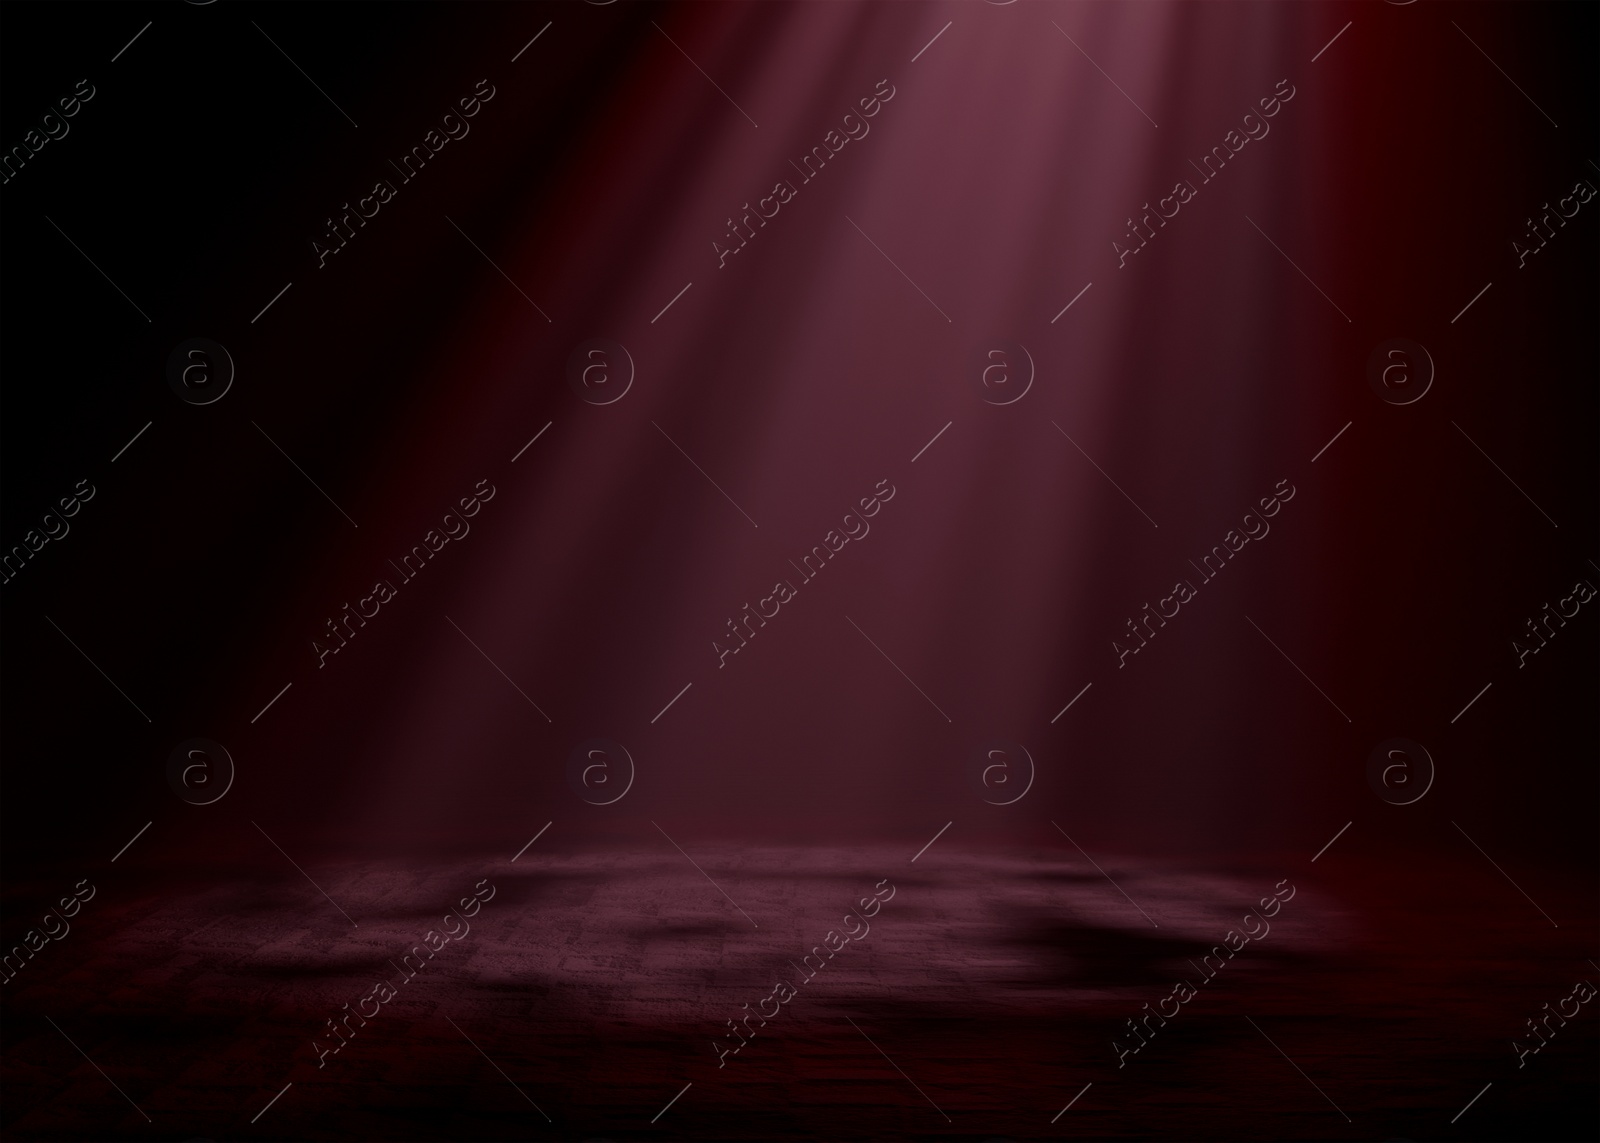 Image of Bright spotlight in dark room. Performance equipment